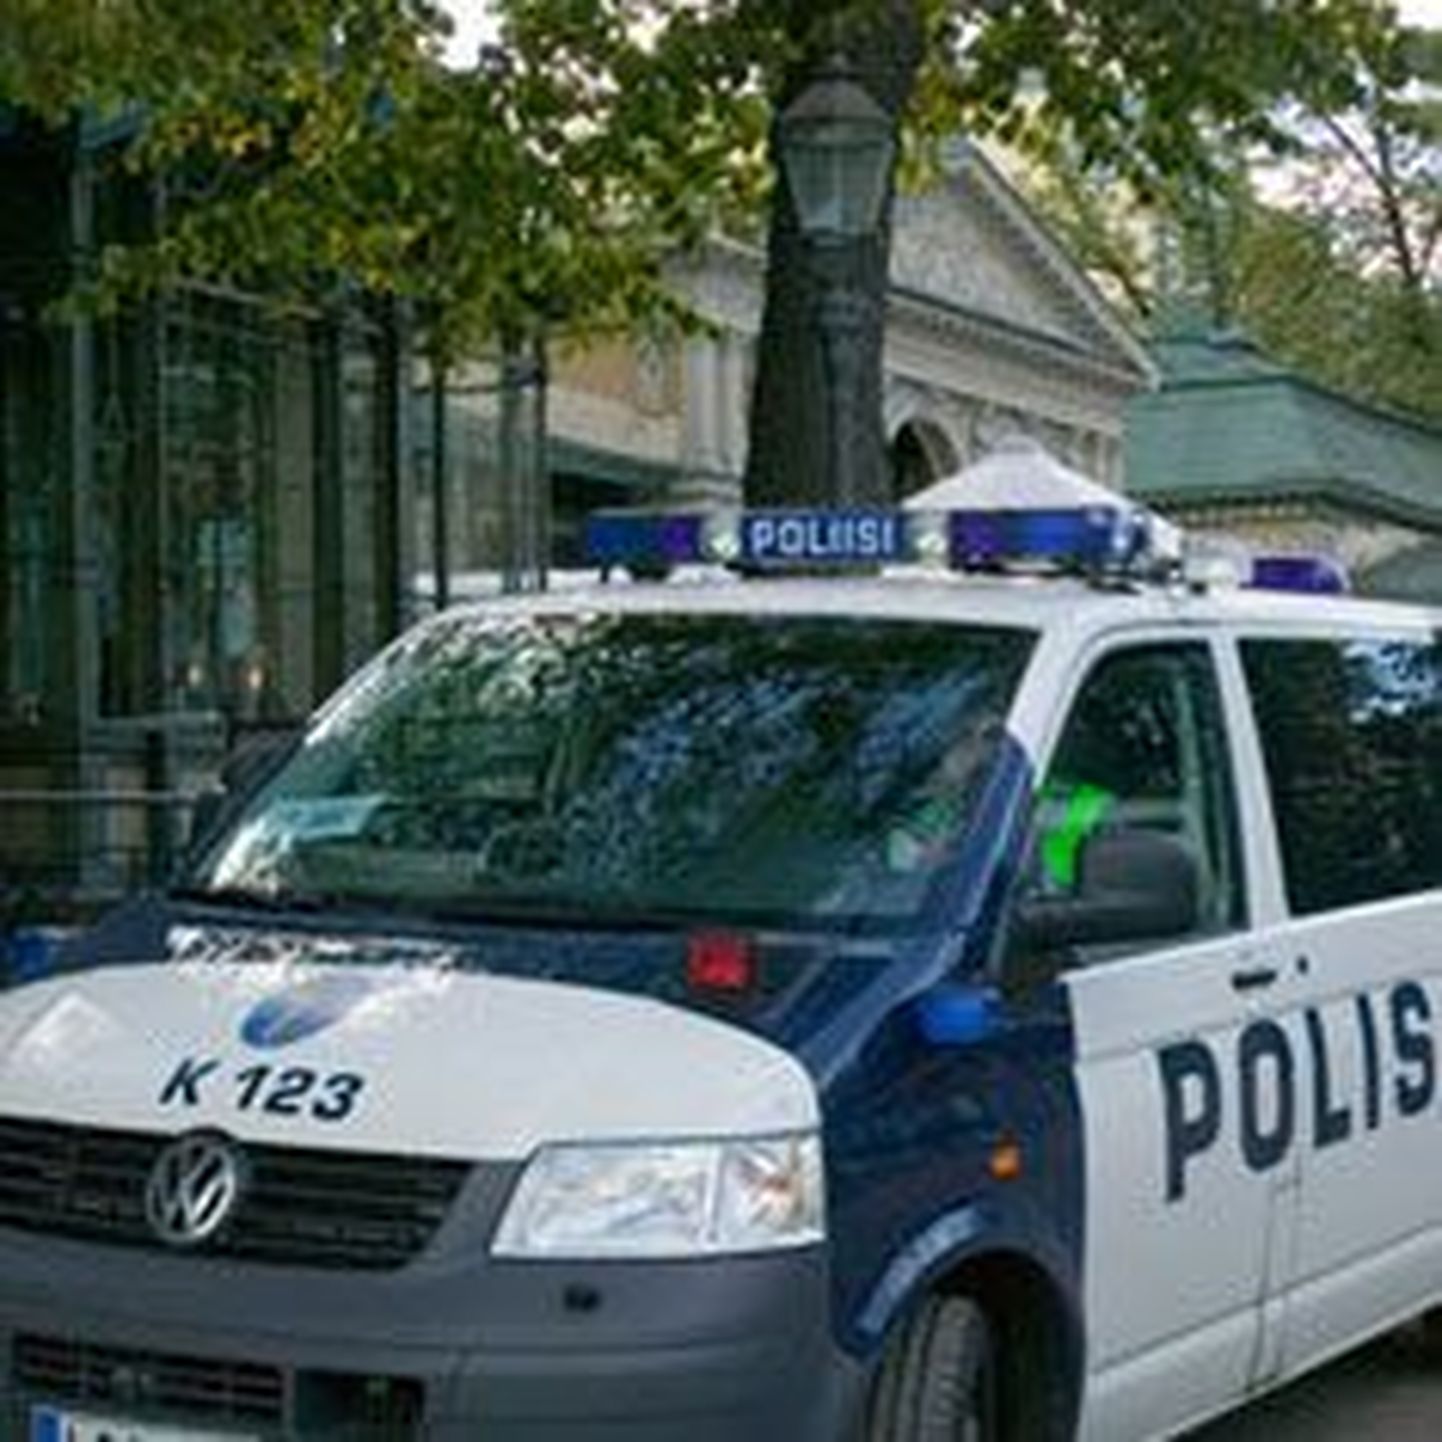 Soome polisei eraldusmärkidega sõiduauto